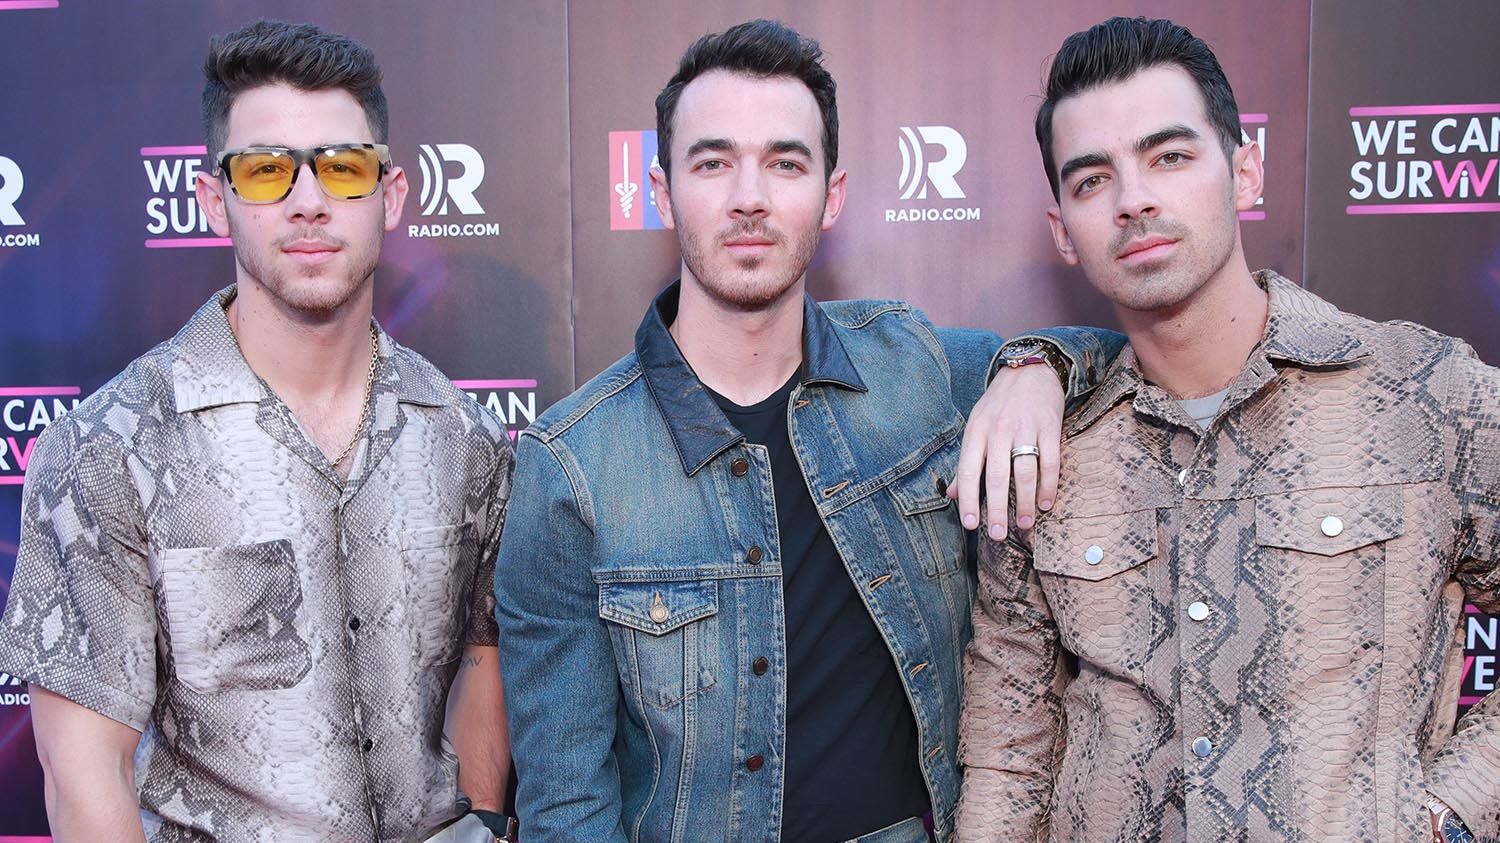 Jonas Brothers Reunite for Photo at Nick Jonas's Wedding